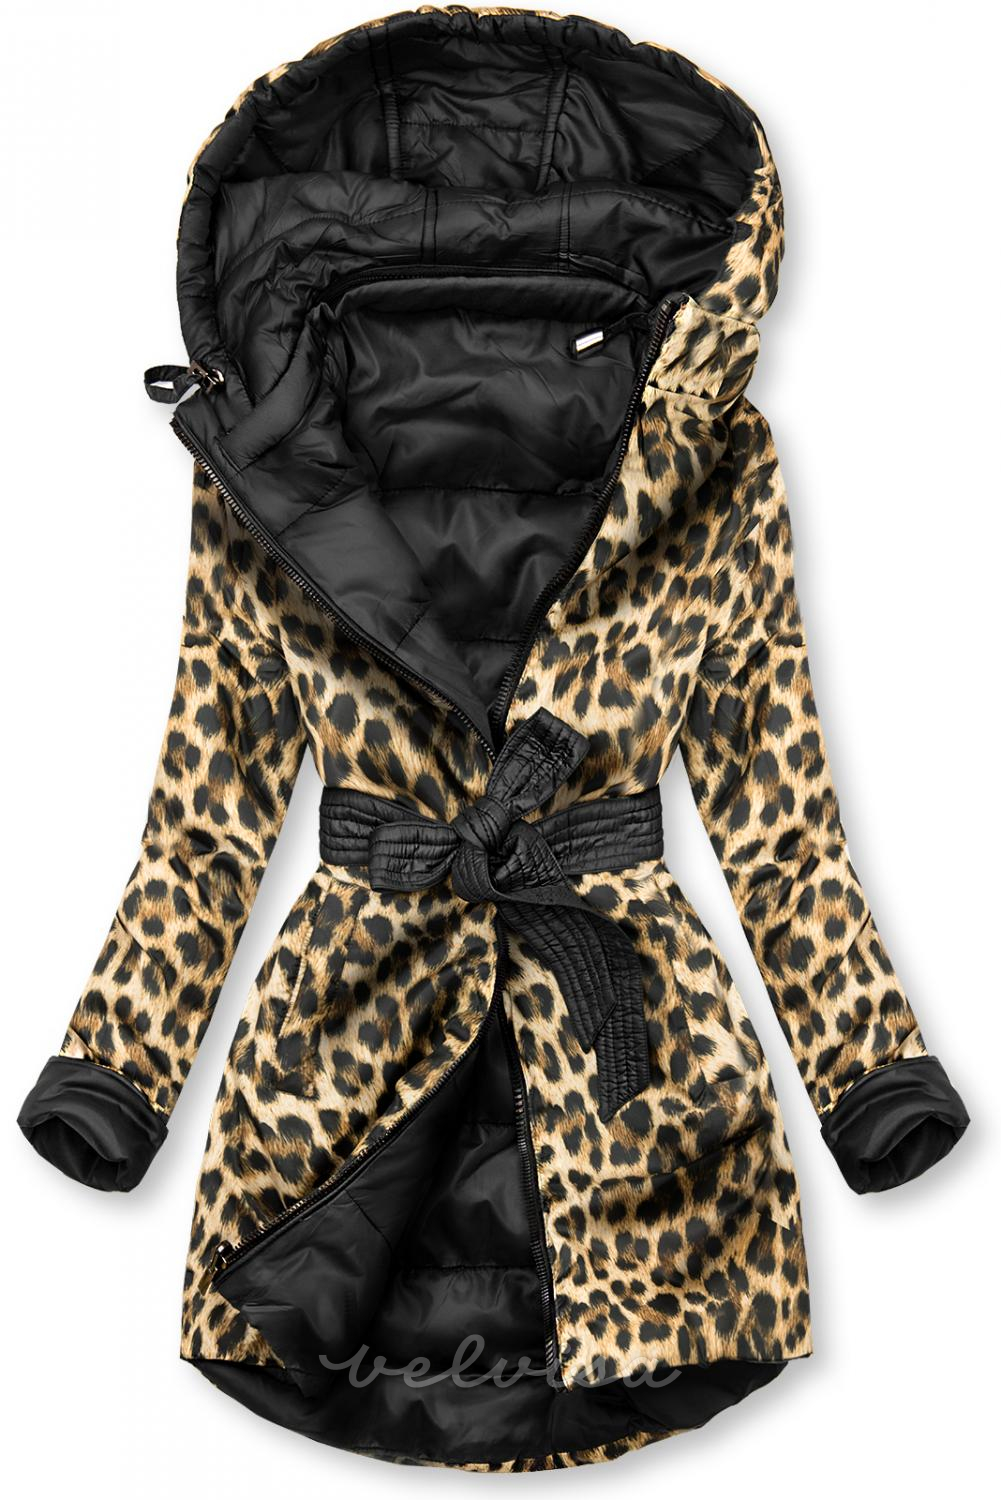 Obojestranska jakna črna/leopardja